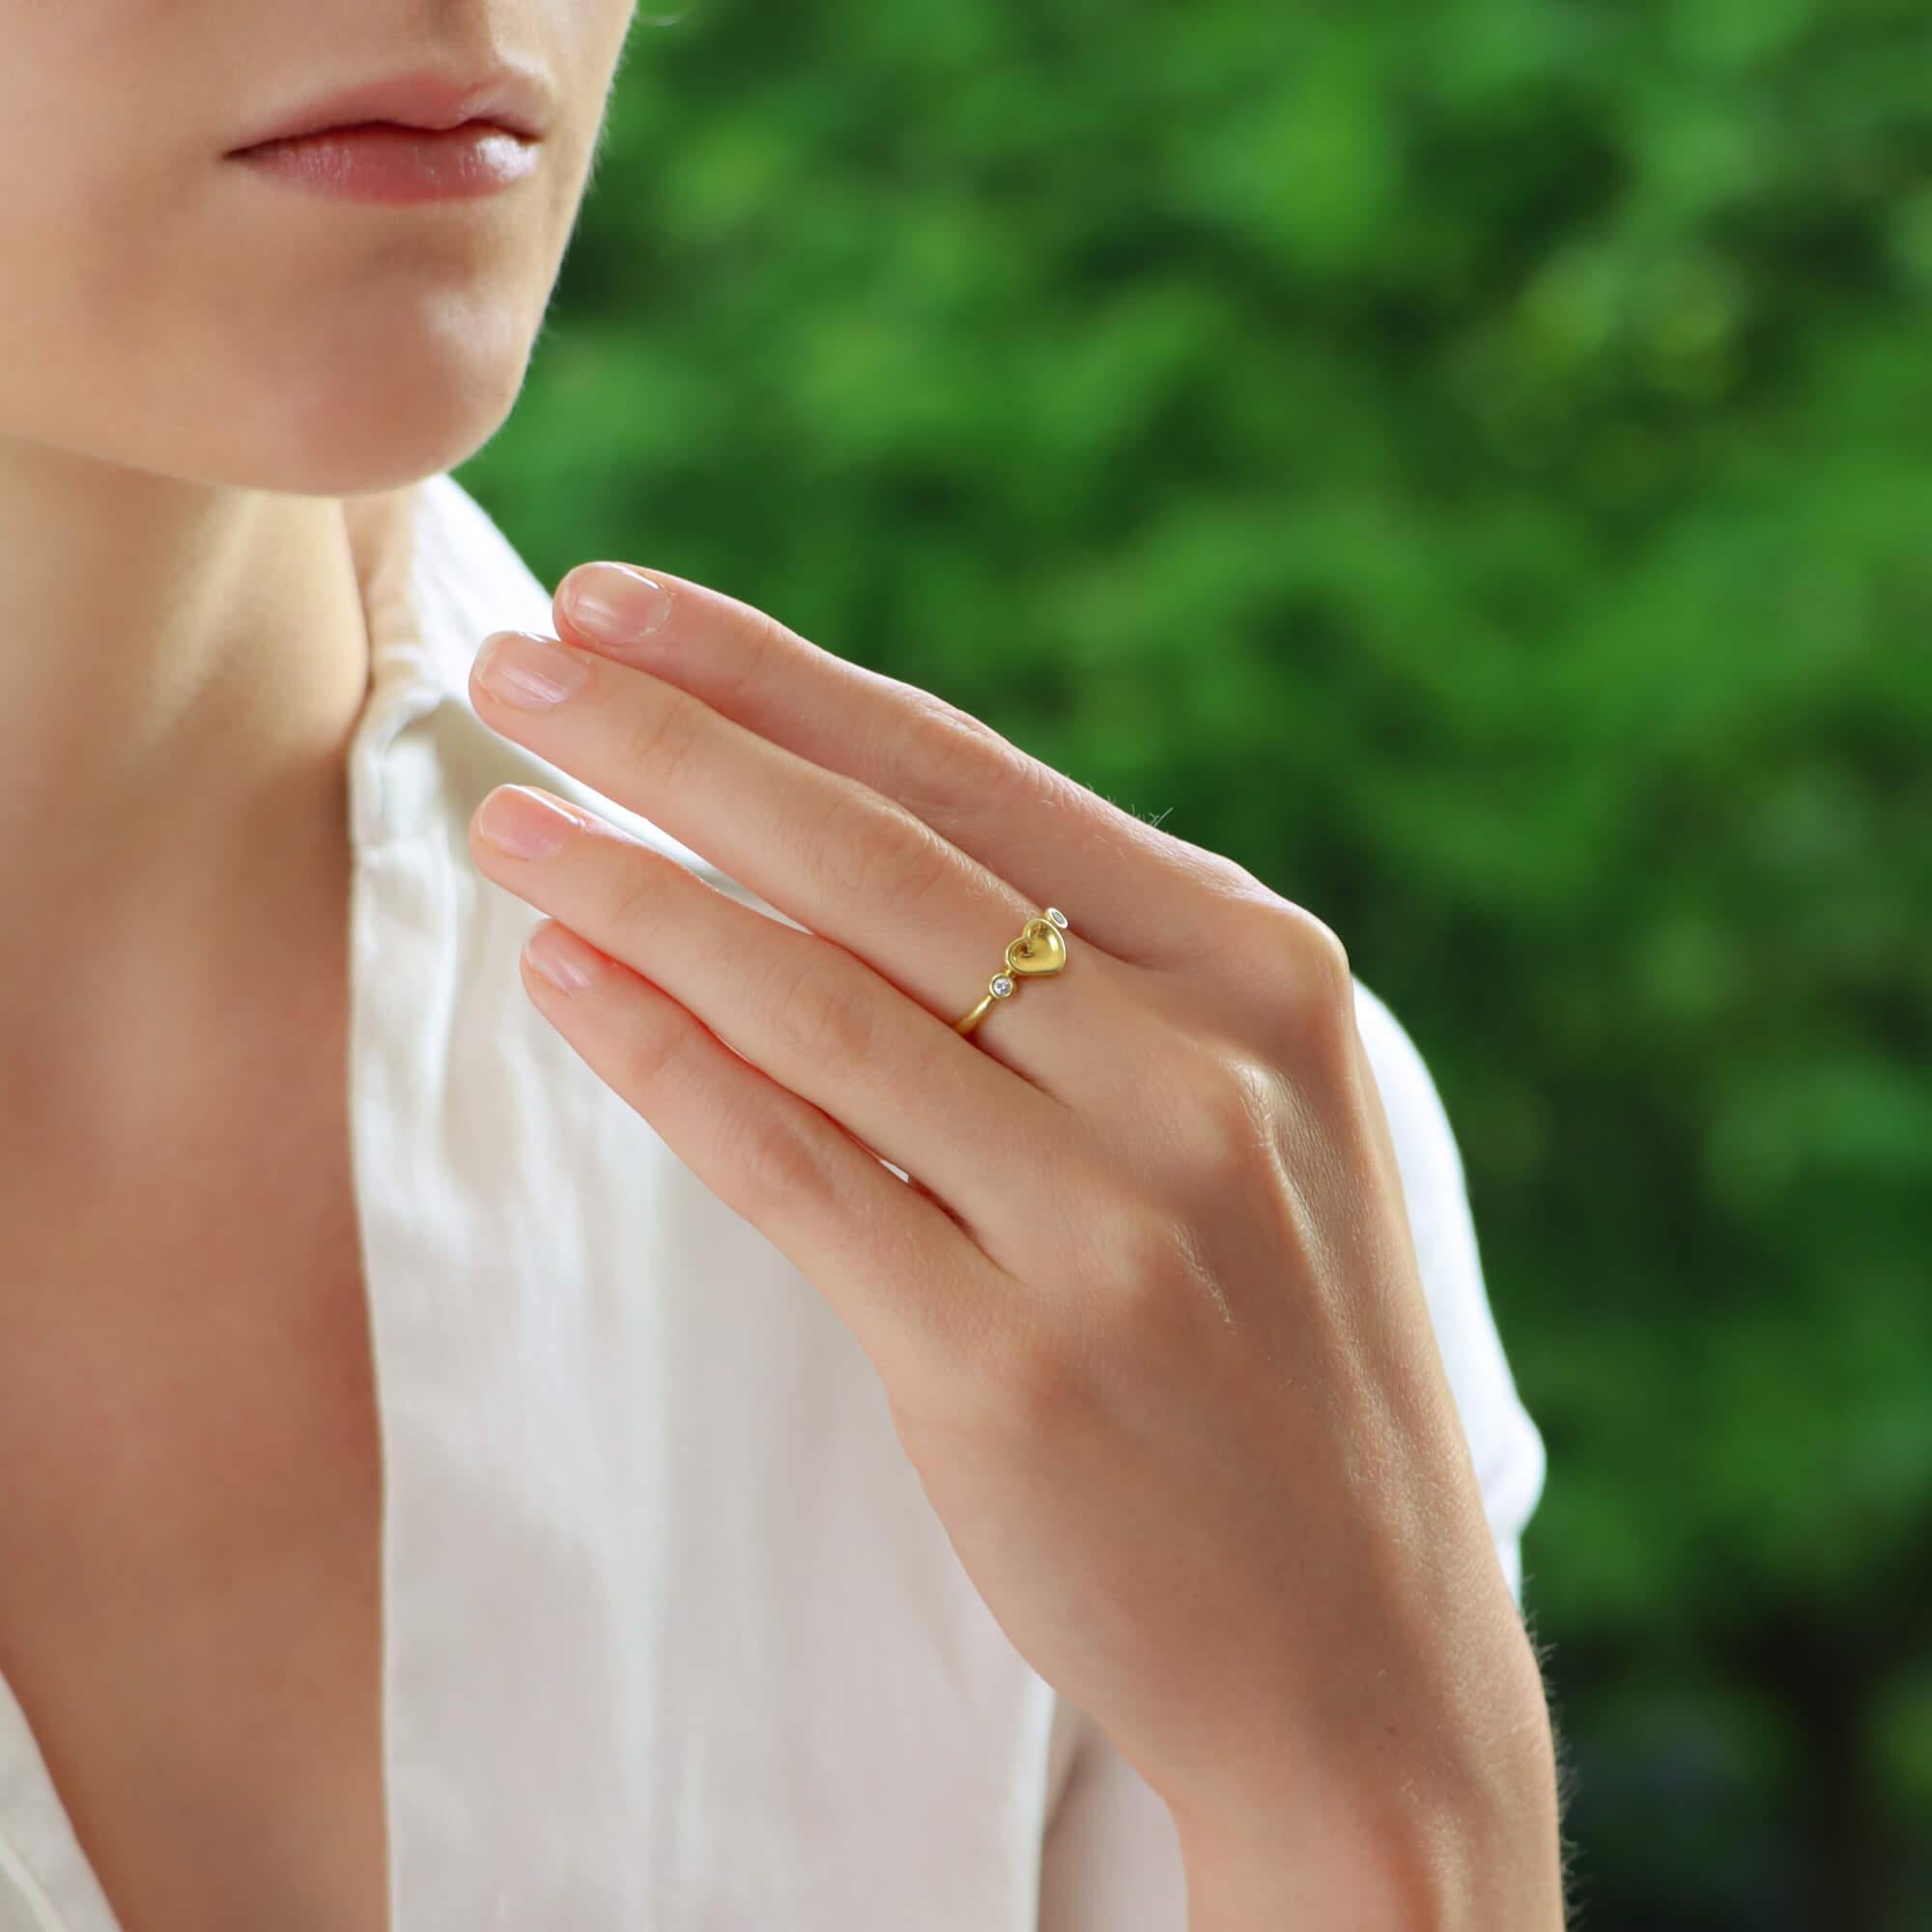  Magnifique bague vintage Elsa Peretti pour Tiffany & Co. en or jaune 18 carats, sertie d'un diamant en forme de cœur.

La bague représente le design emblématique du cœur plein d'Elsa Peretti et est flanquée de deux diamants ronds de taille